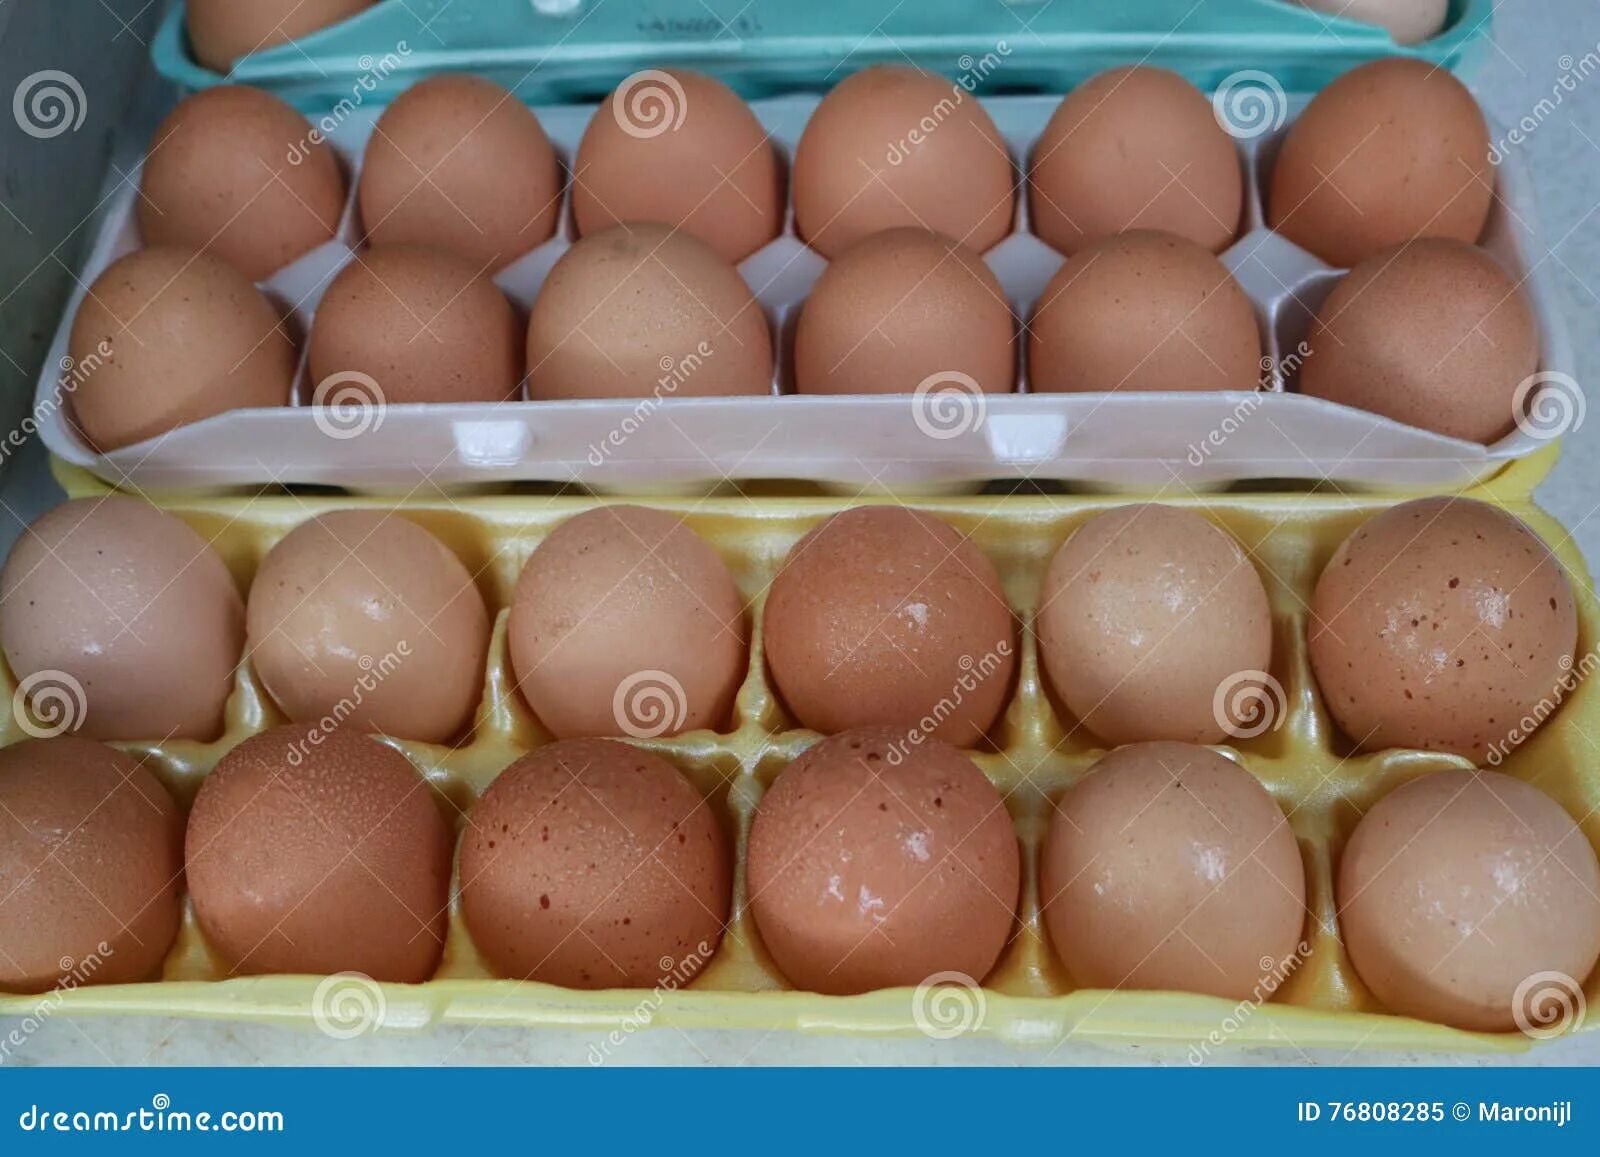 Цена мужского яйца в рублях. Стоимость человеческого яйца.